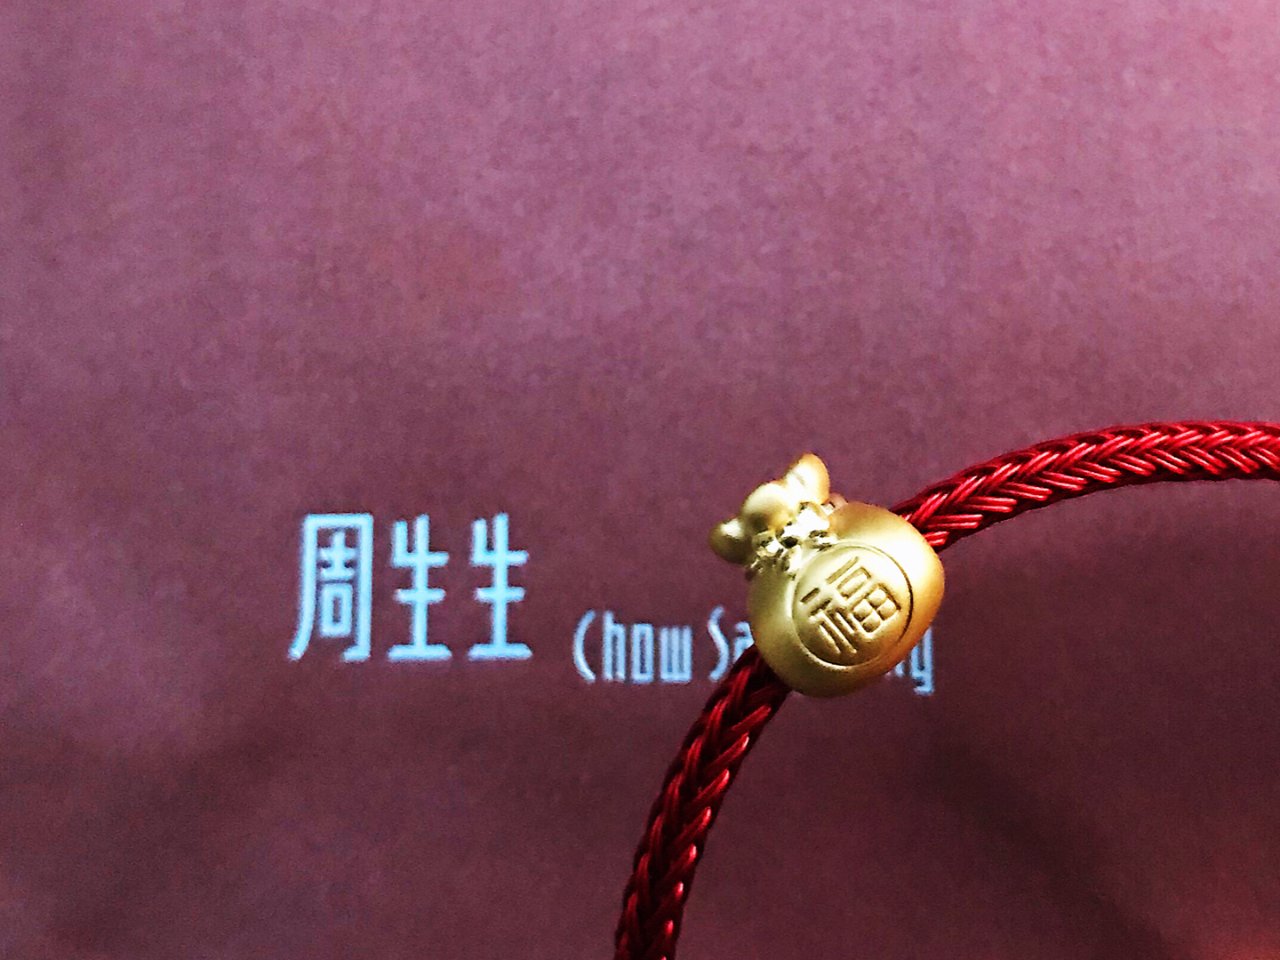 Chow Sang Sang 周生生,福袋,不锈钢手绳,特价活动$146包邮送手绳